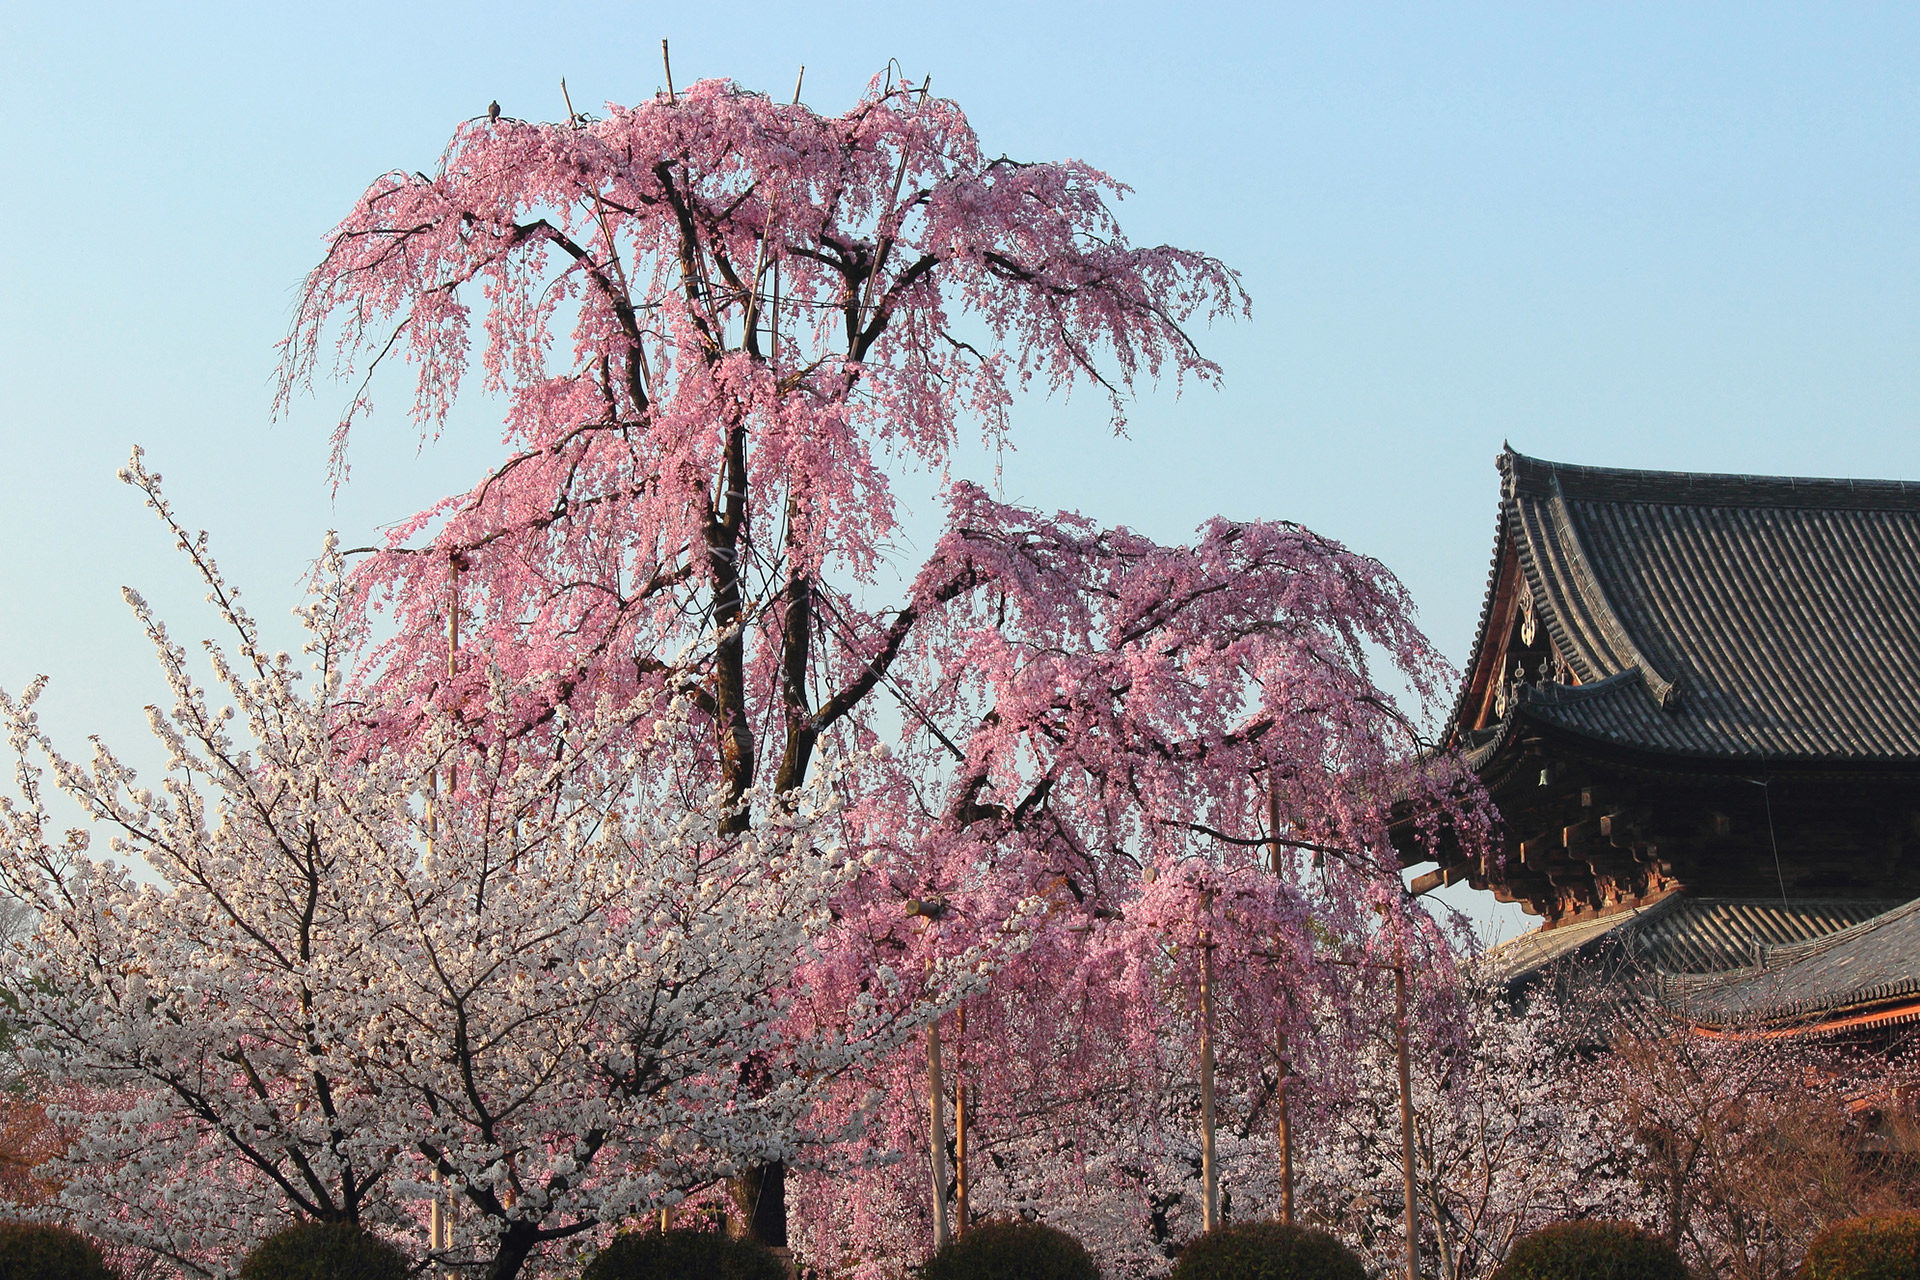 京都で桜の穴場と言えば 東寺 その魅力とは Caedekyoto カエデ京都 紅葉と伝統美を引き継ぐバッグ